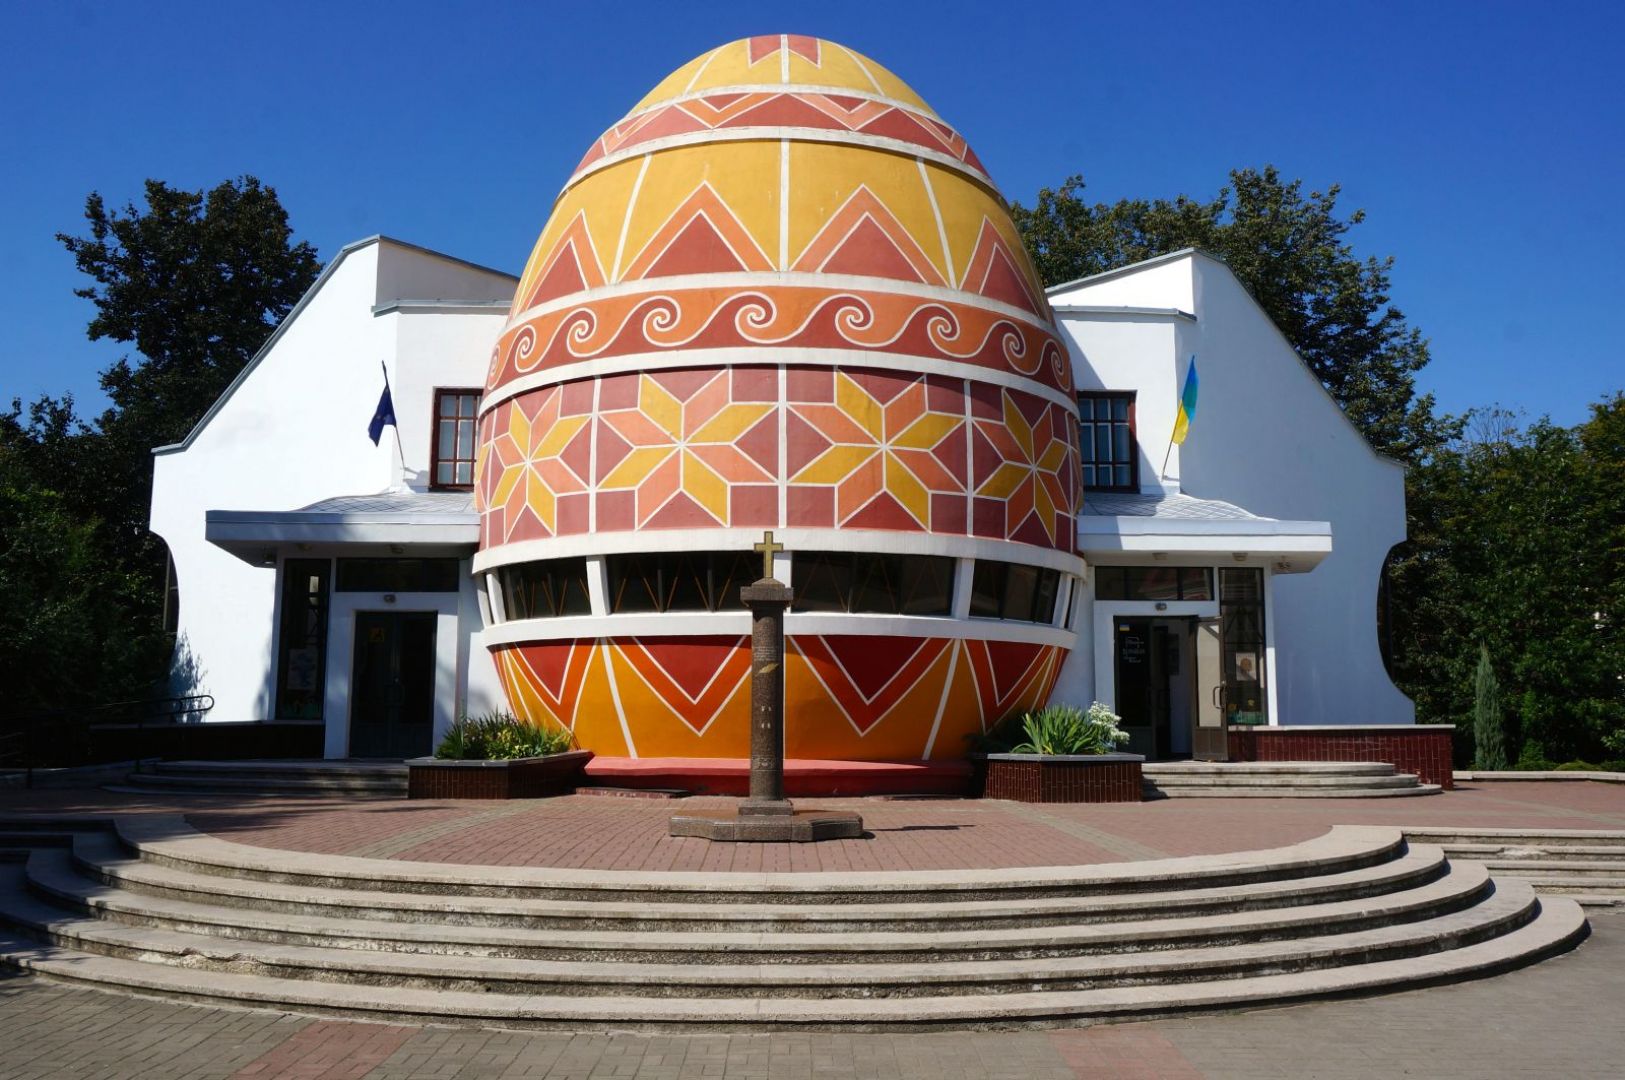 Ten budynek nie może być niczym innym niż Muzeum Pisanek! Wielkie jajo powstało na Ukrainie w Kołomyi w 2000 roku z okazji festiwalu kultury huculskiej. Fot. roamingaroundtheworld.com